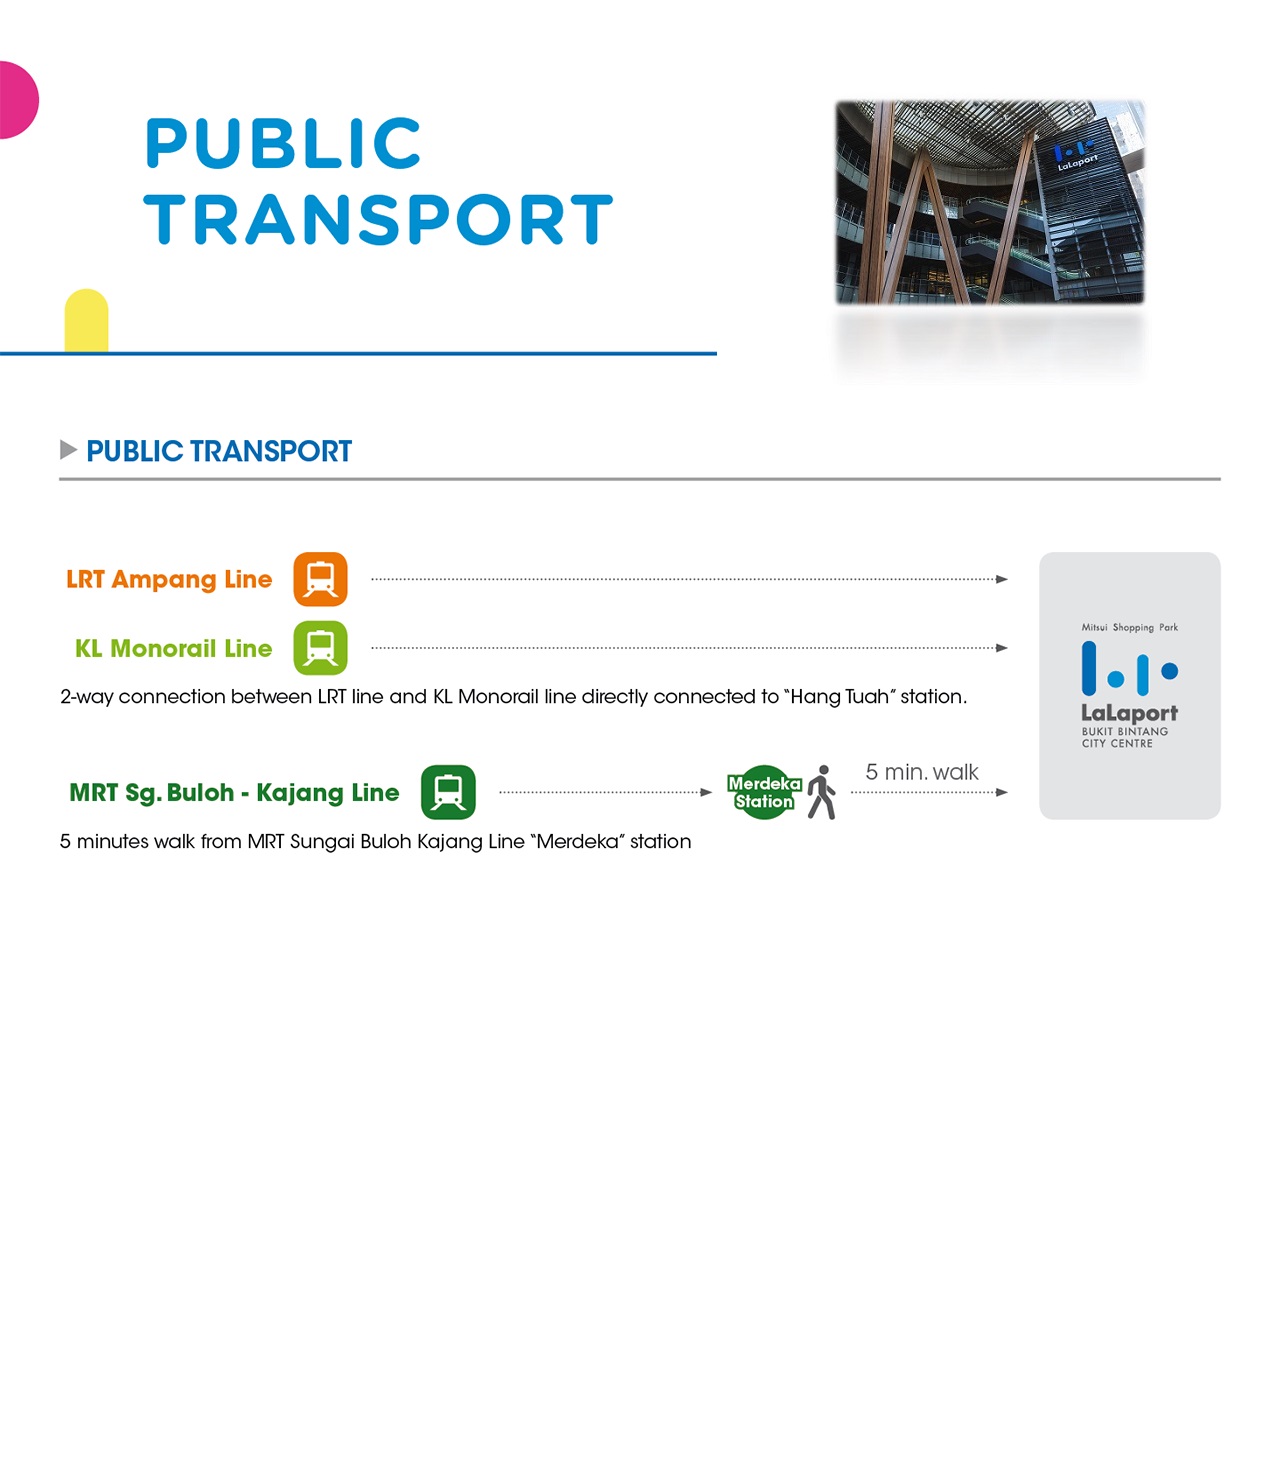 Public Transportation Overview